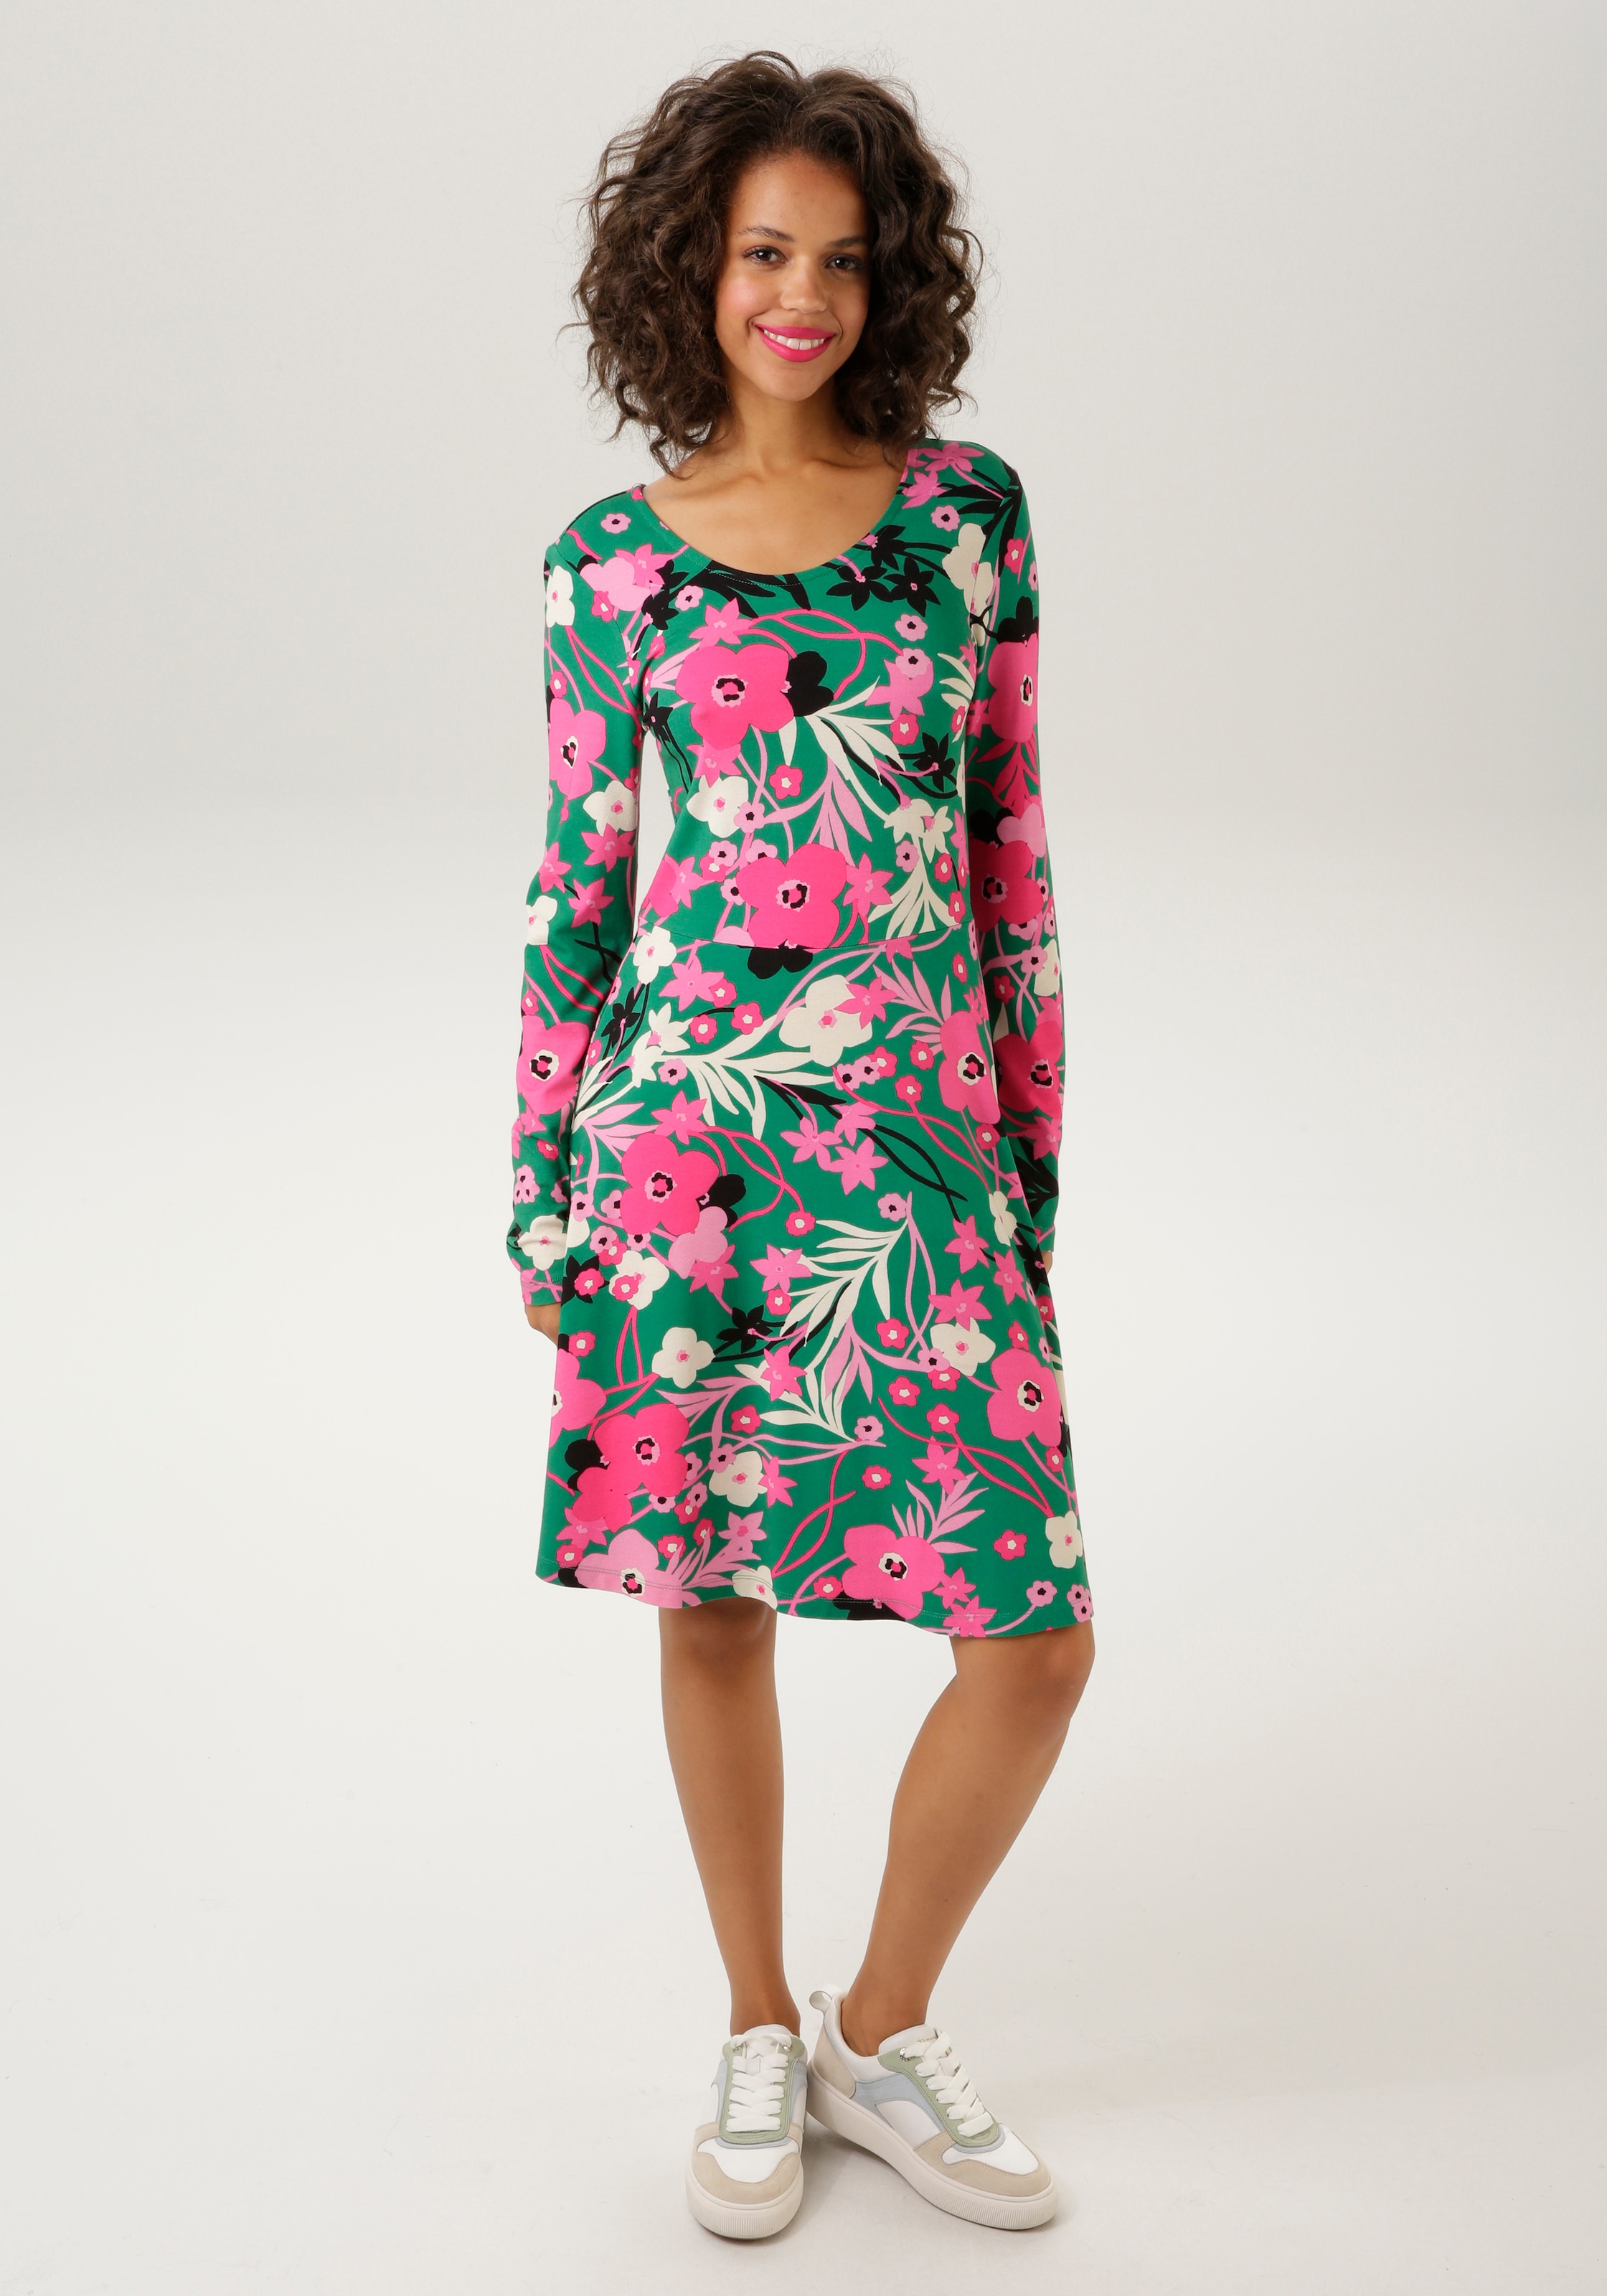 Jerseykleid, mit trendfarbigen Blumendruck -jedes Teil ein Unikat - NEUE KOLLEKTION